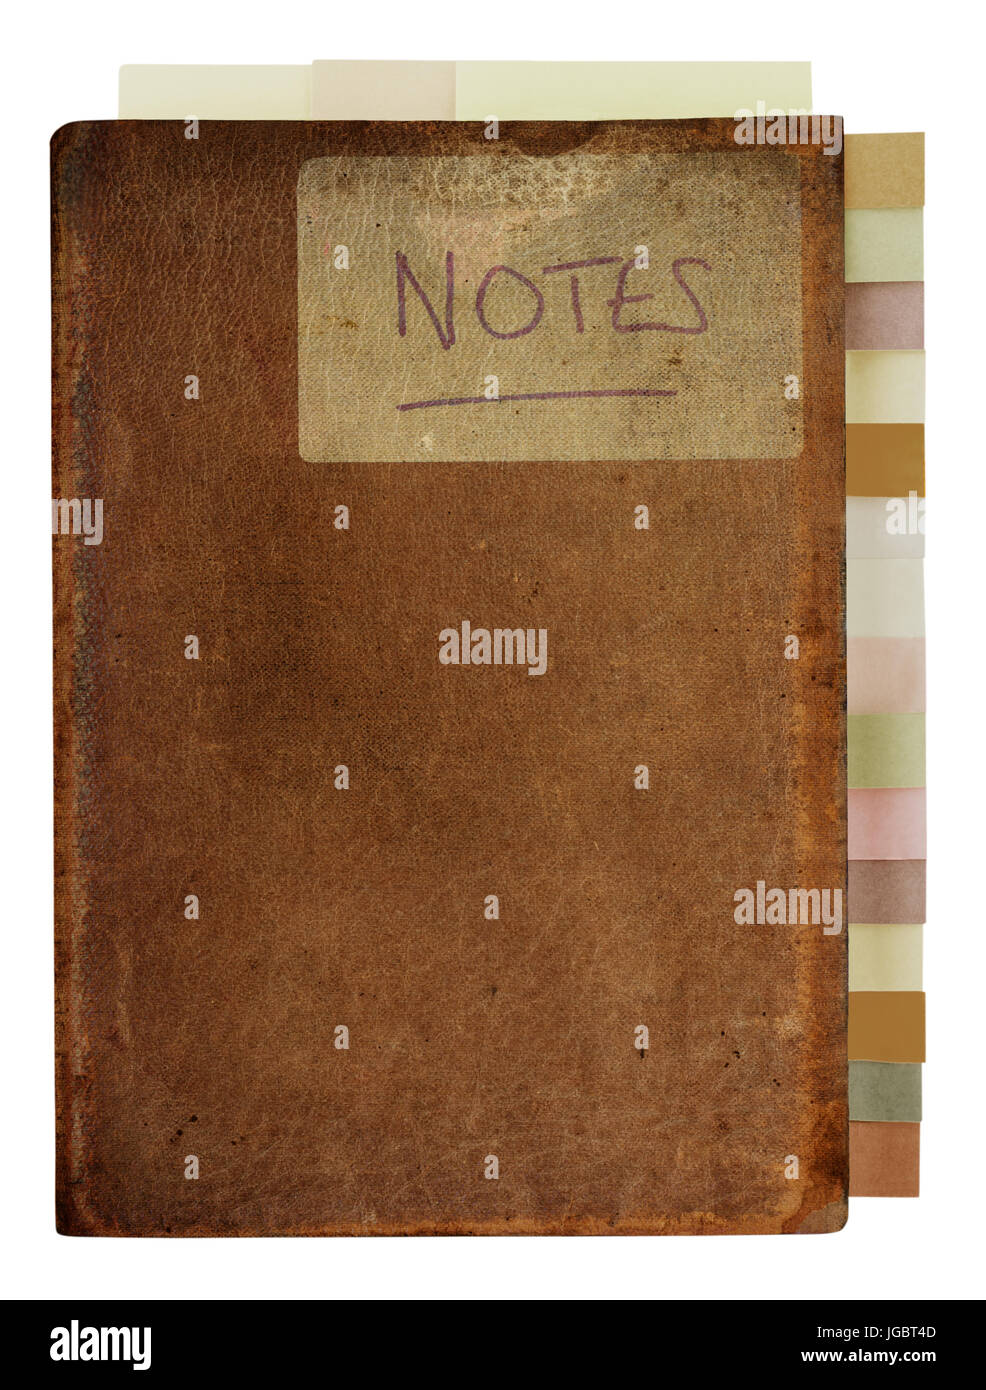 Isolato, usurati, contrassegnati e colorate vecchia pelle marrone notebook, marcato con la parola manoscritta "Note". Indice a schede in basso a destra in mute c Foto Stock